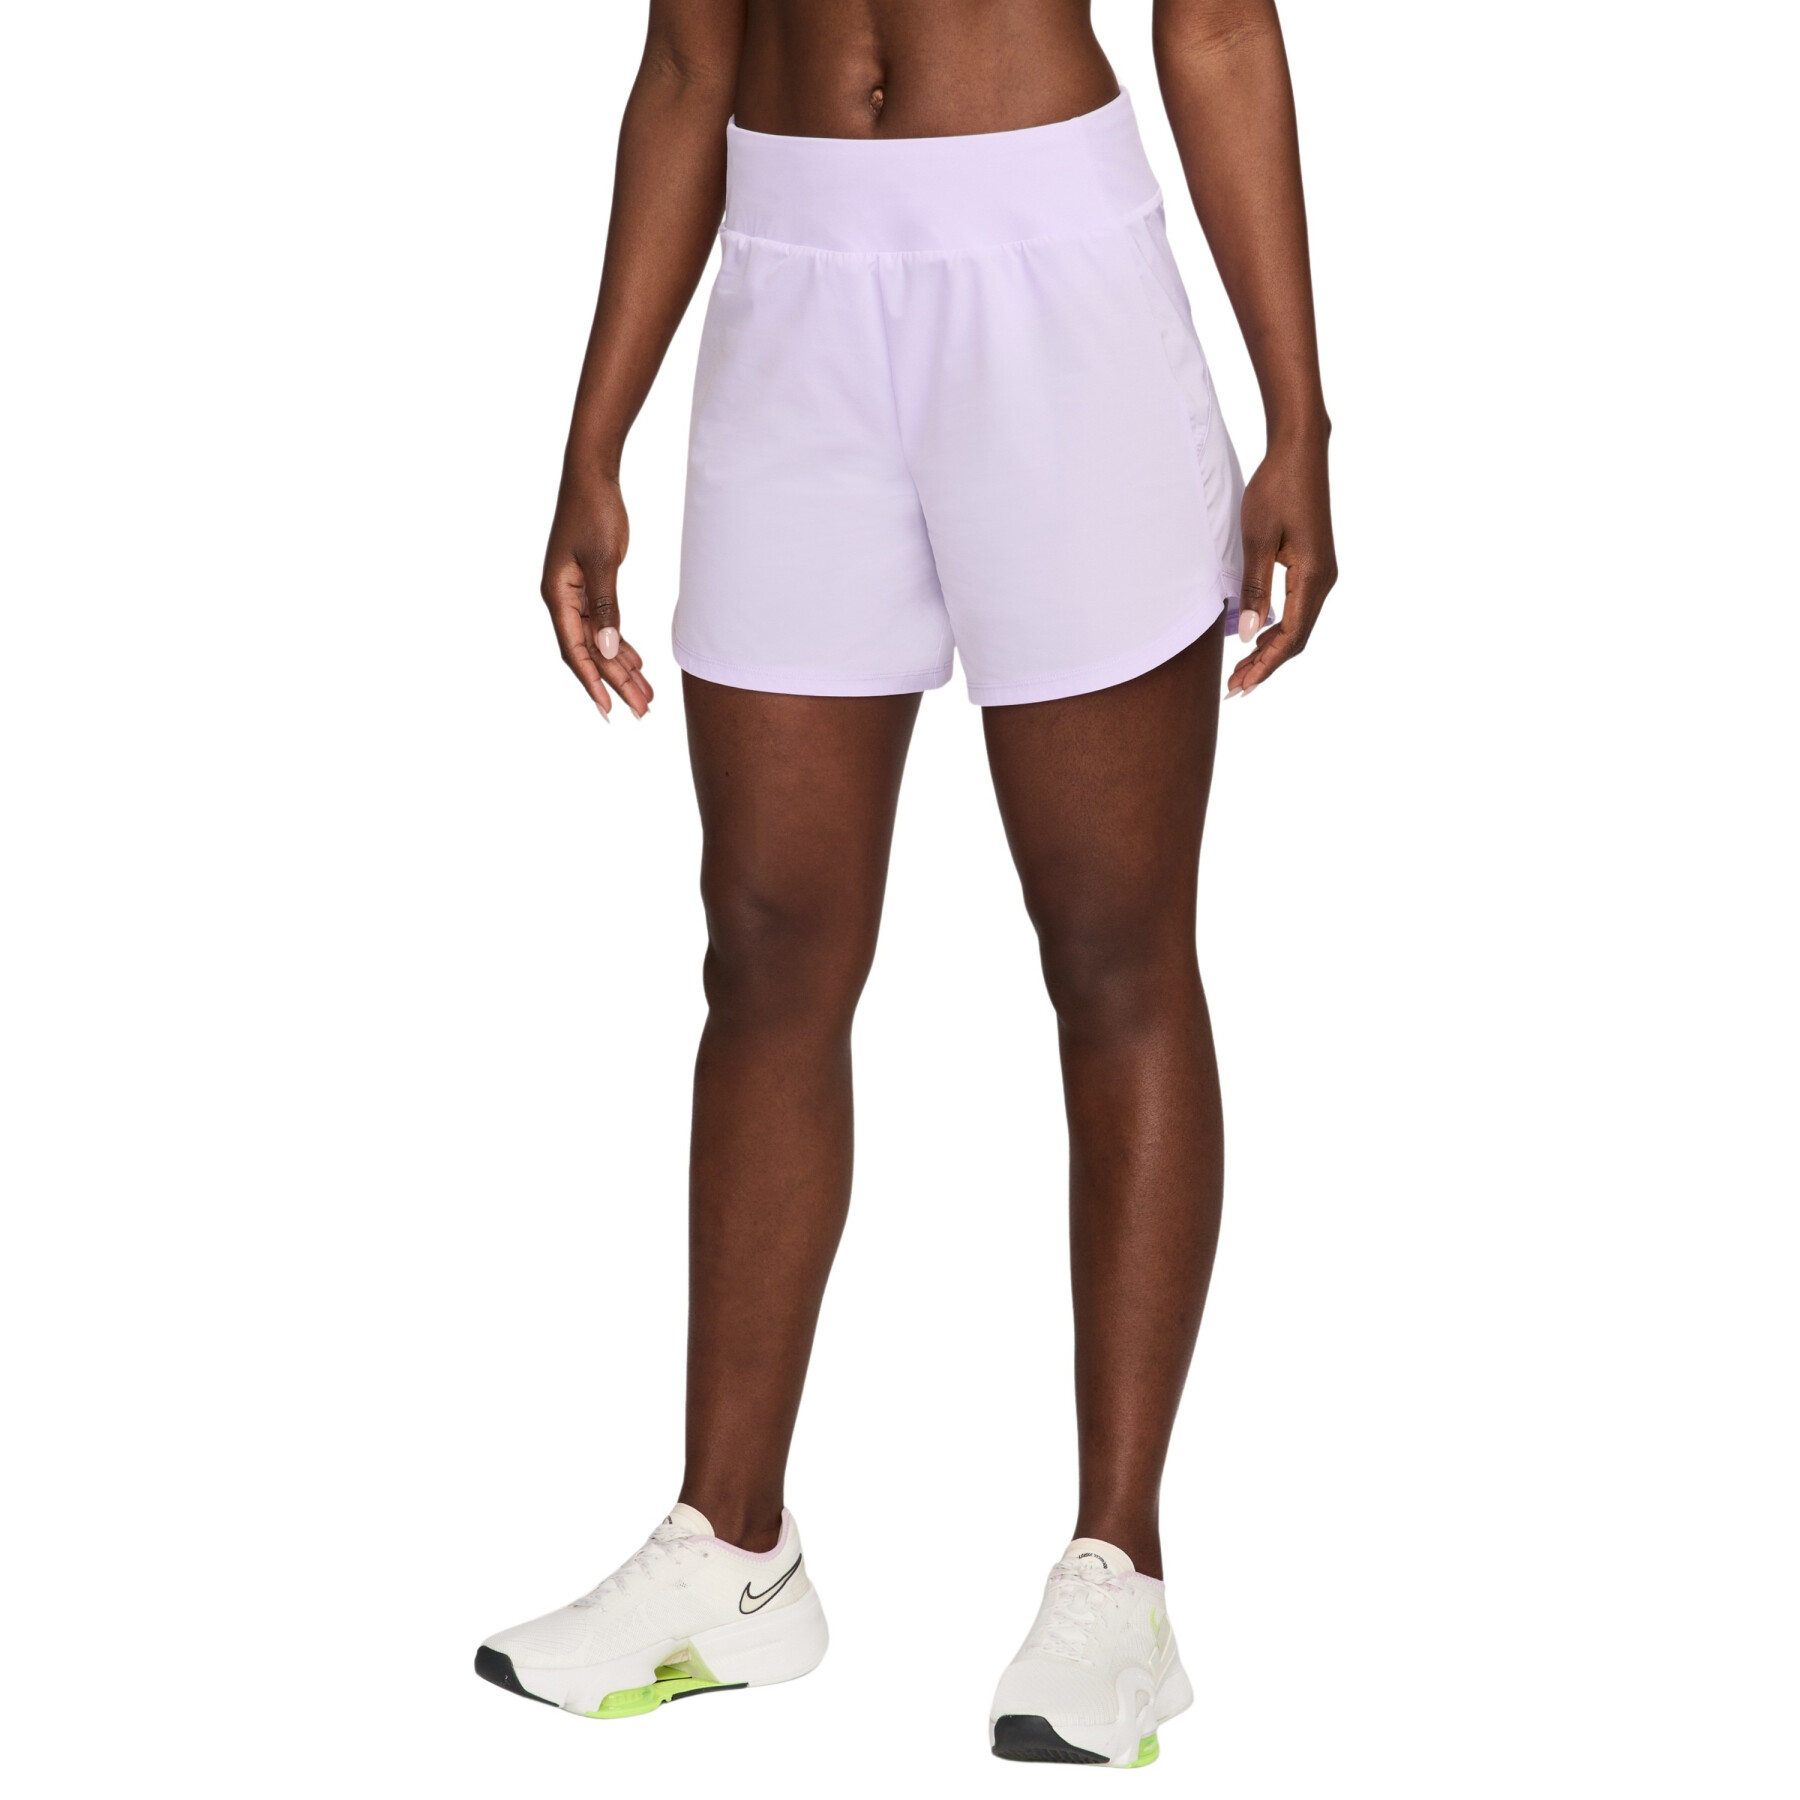 Pantalón corto femenino de tiro medio con calzoncillo integrado Nike Bliss Dri-FIT